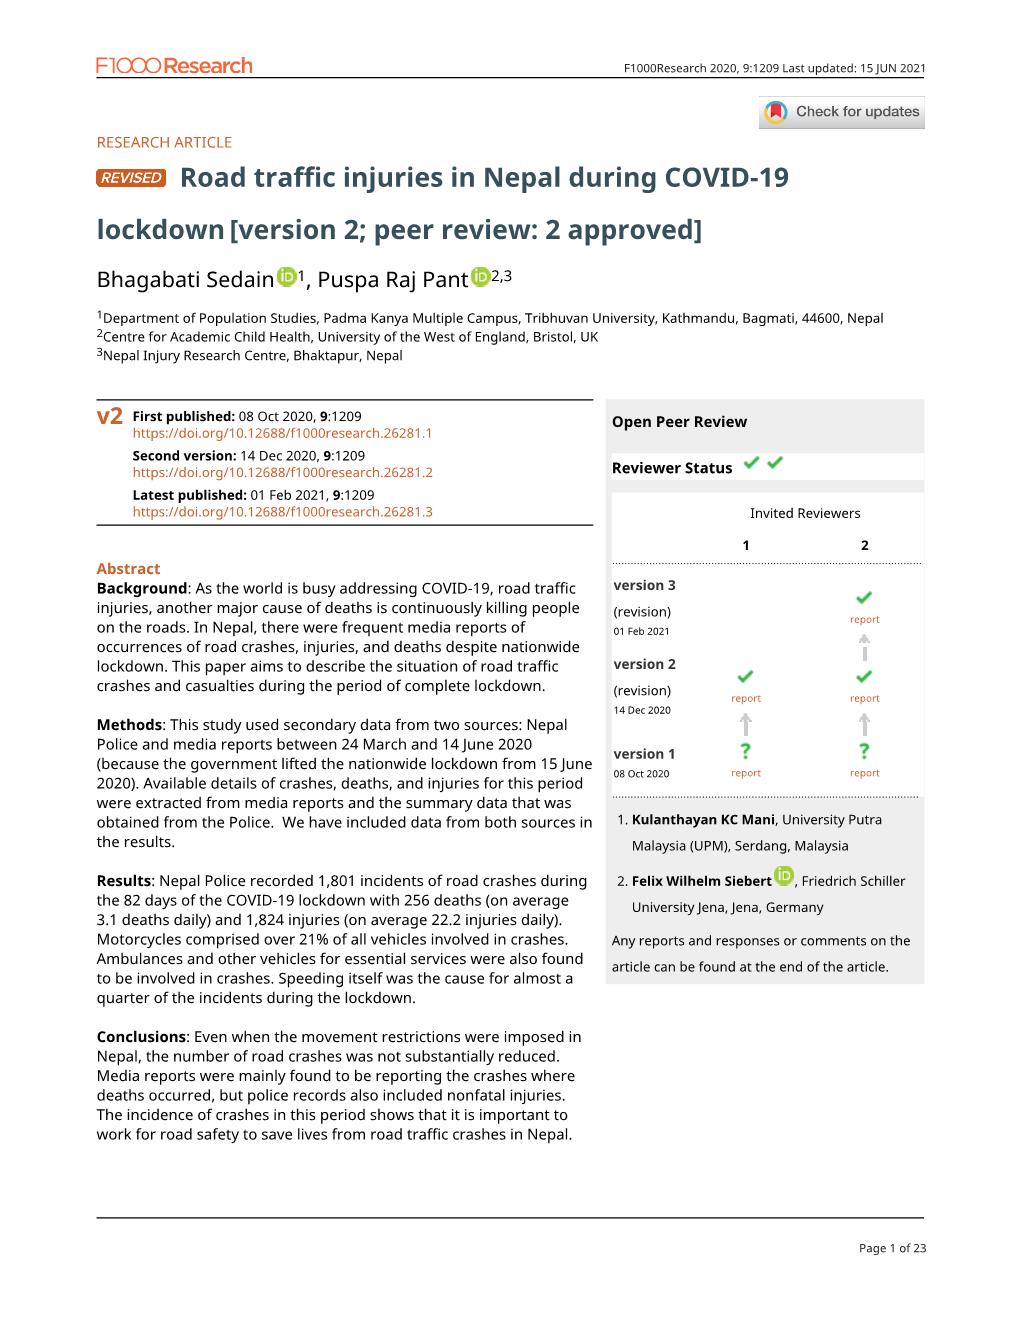 Road Traffic Injuries in Nepal During COVID-19 Lockdown[Version 2; Peer